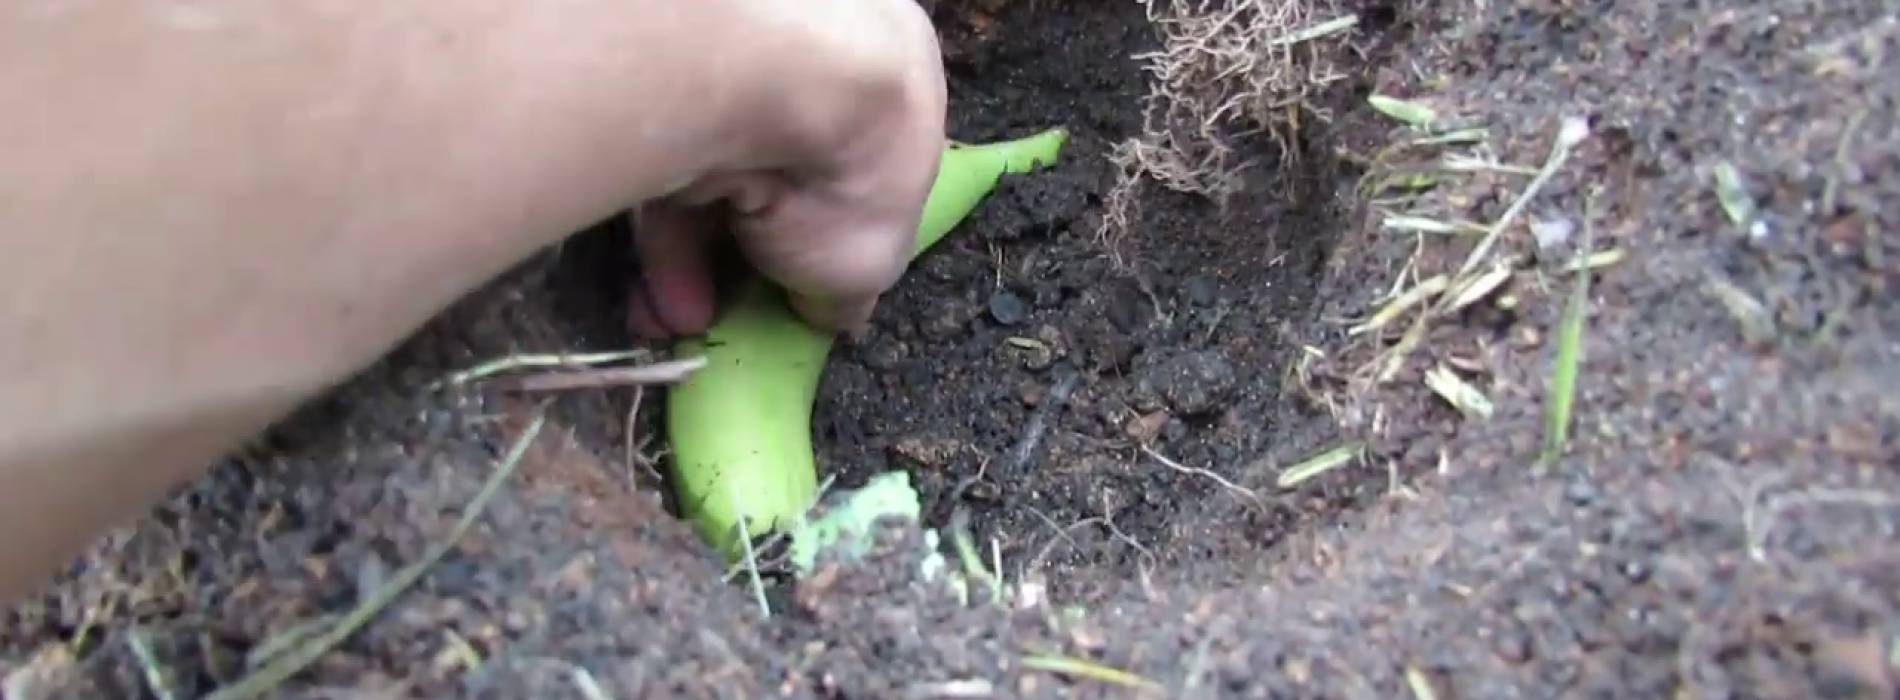 Als je een ei en een banaan naast elkaar in de tuin begraaft, krijg je een aantal verbluffende resultaten